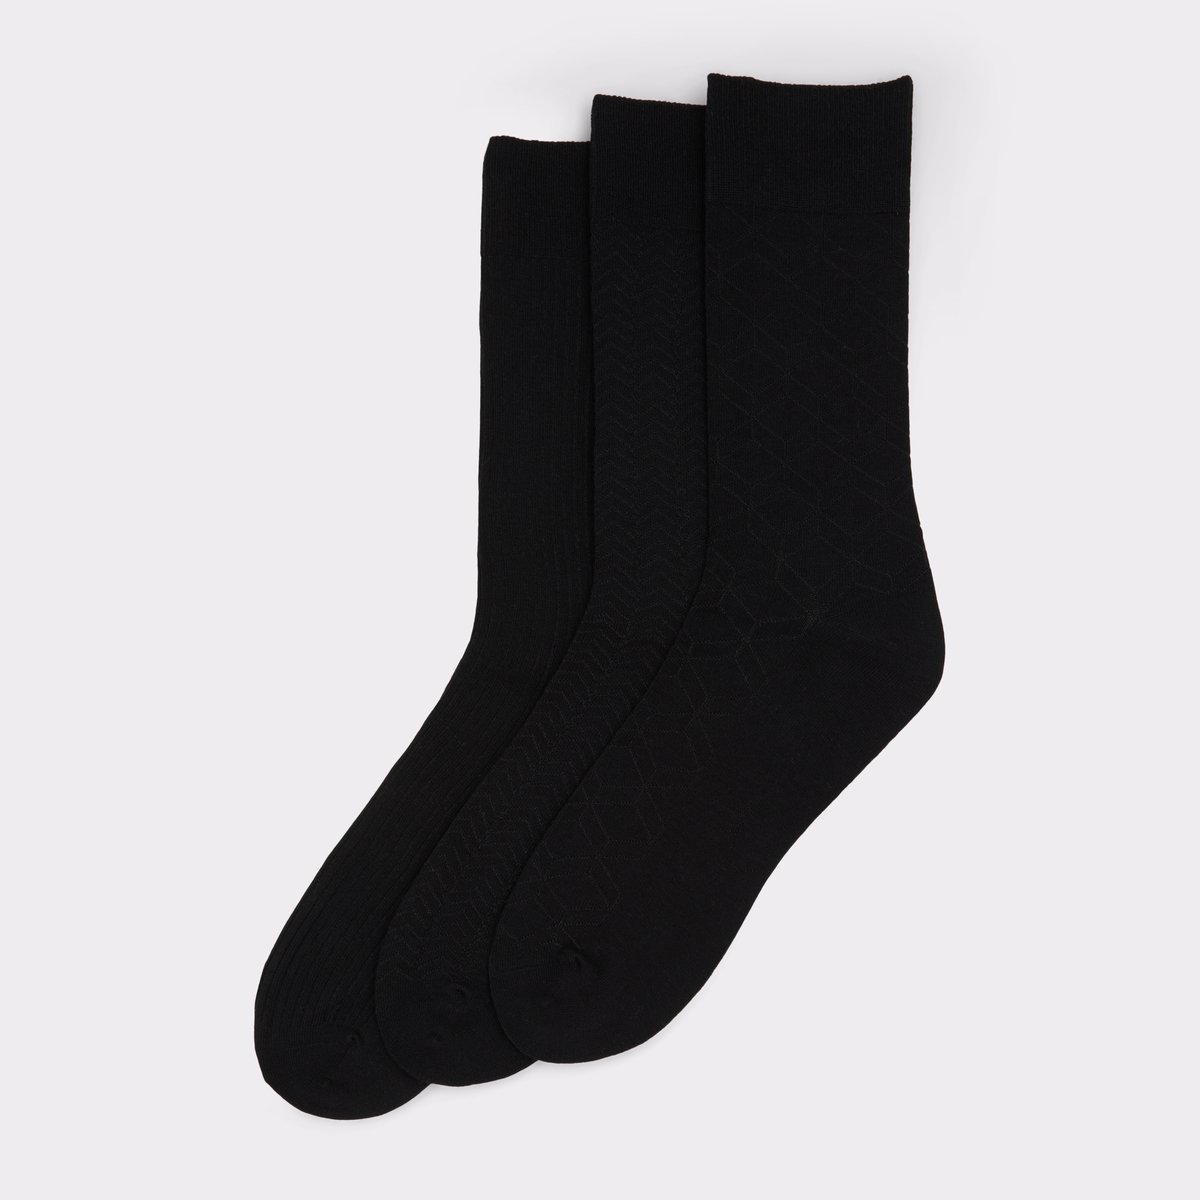 Wanaro Black Men's Socks | ALDO US